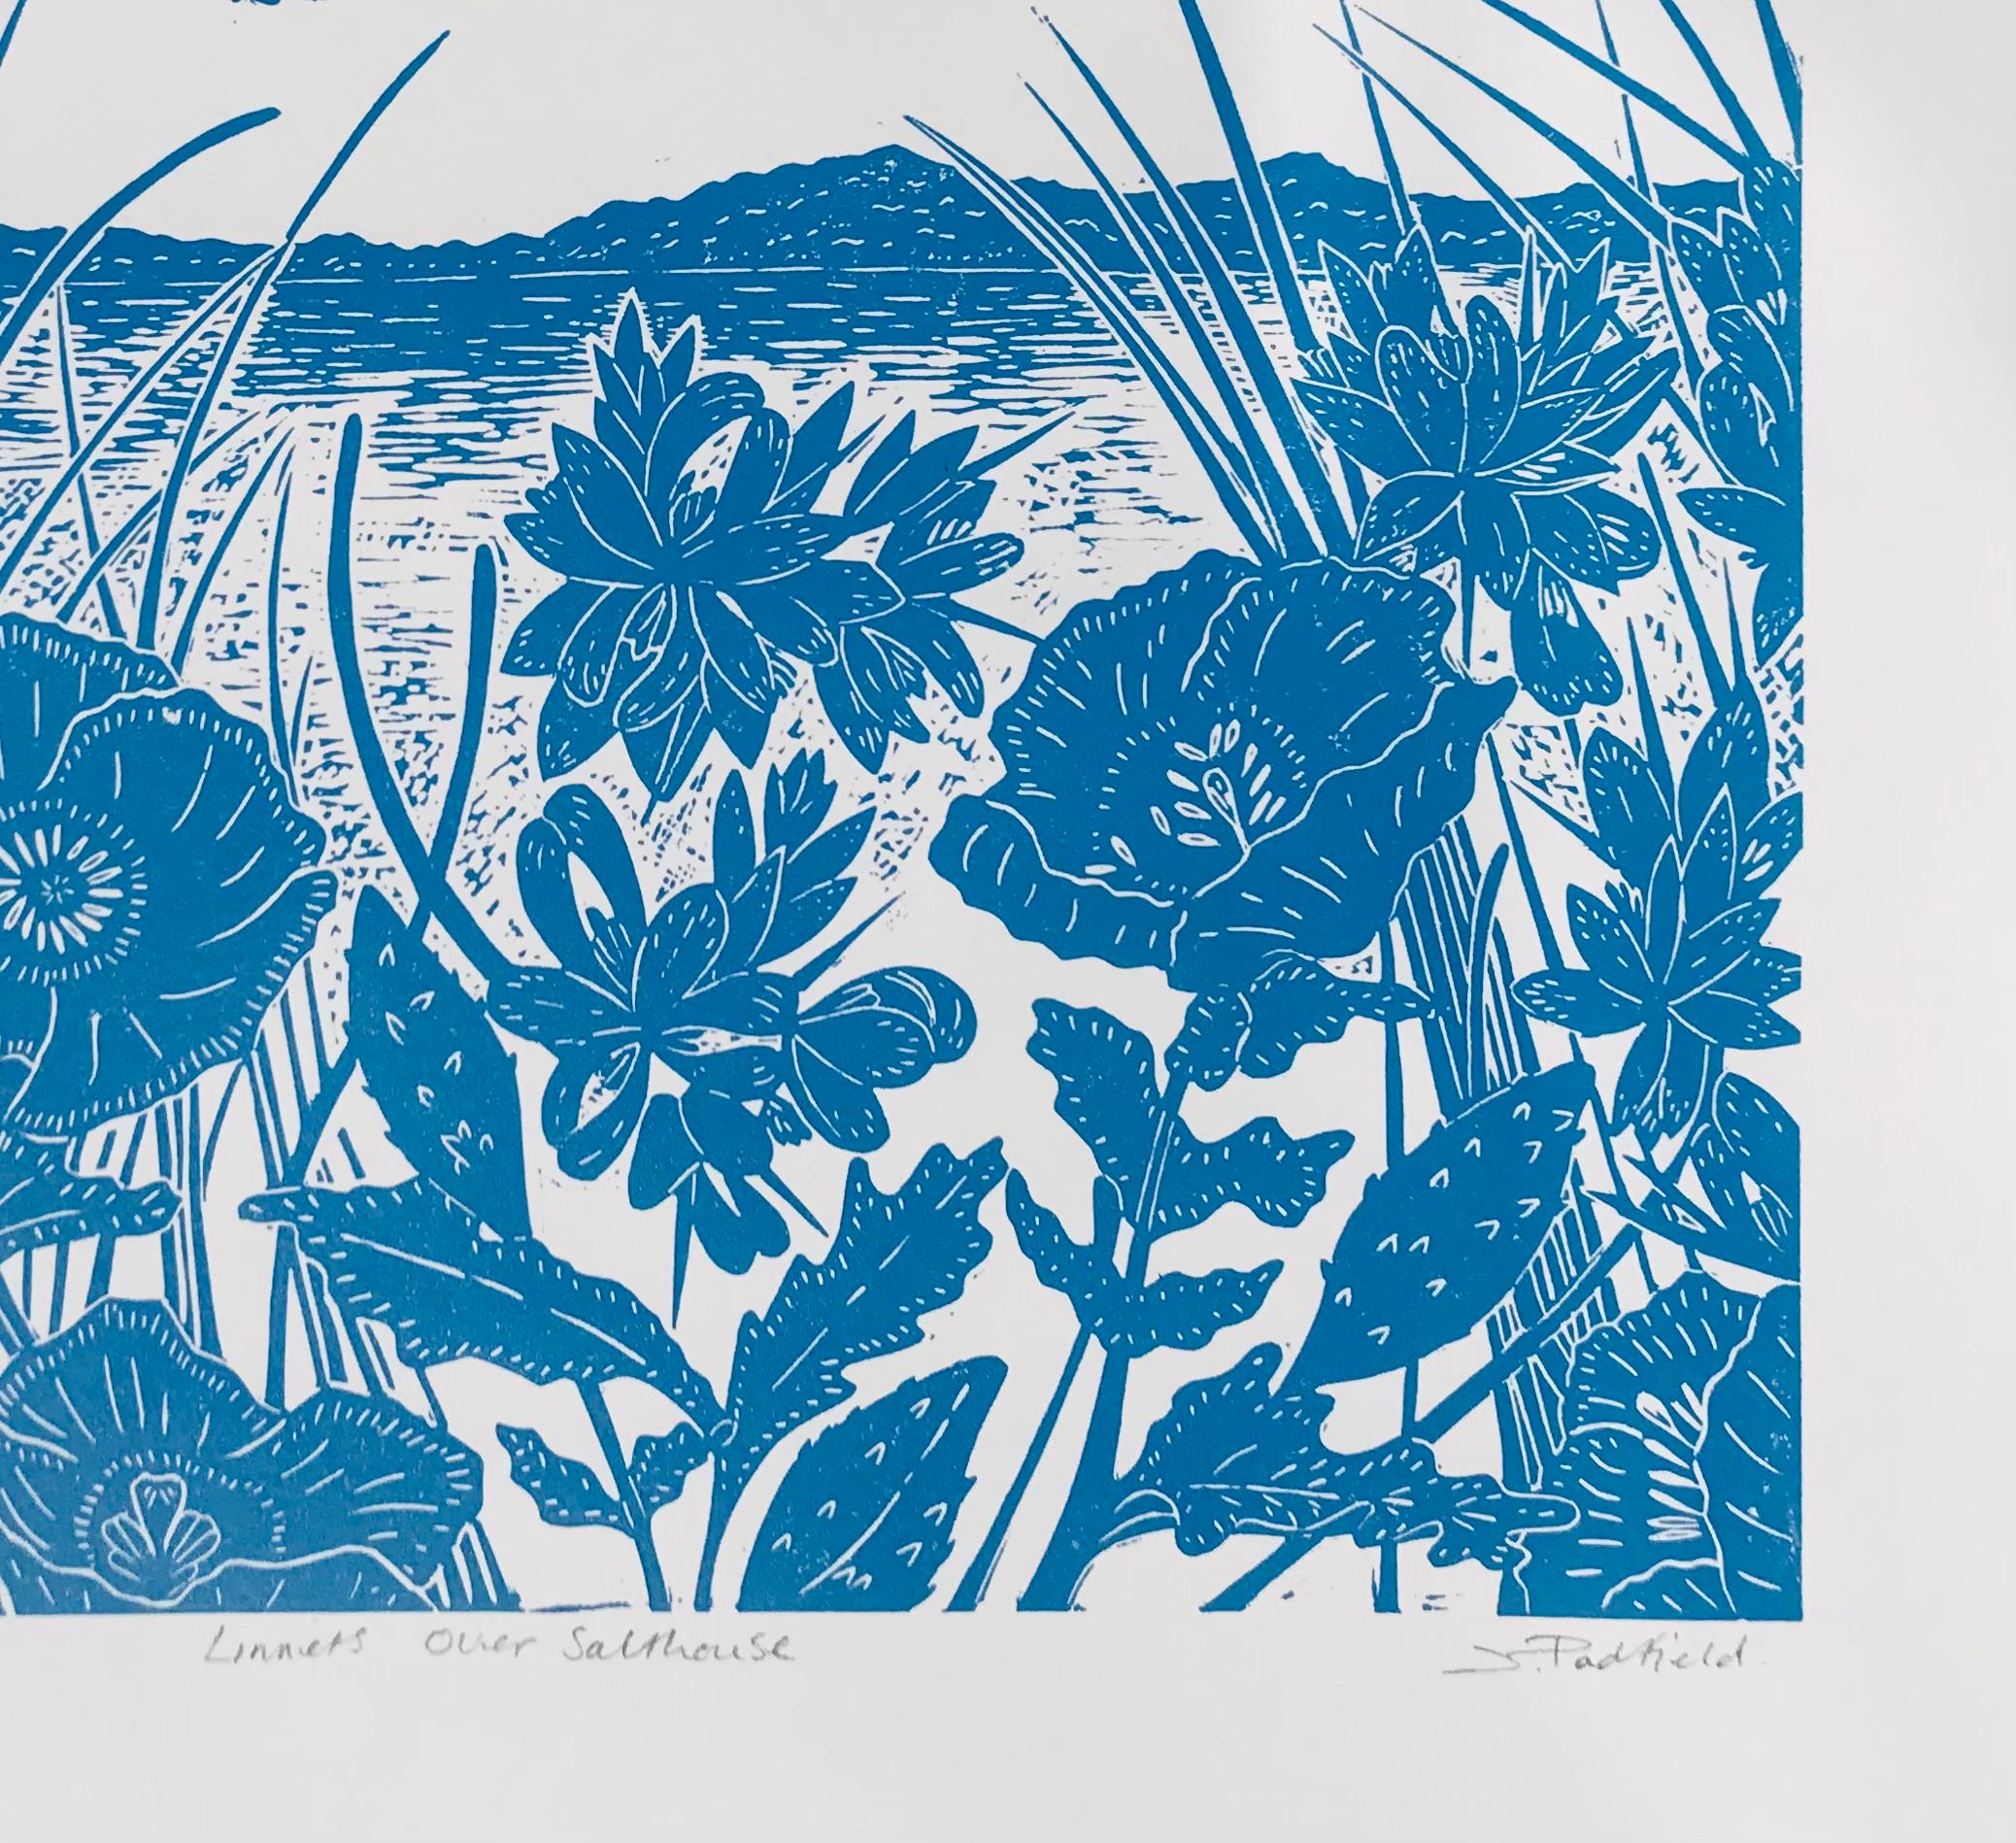 Linnets über Salthouse von Joanna Padfield, Druck in limitierter Auflage, Vögel (Grau), Landscape Print, von Joanna Padfield 